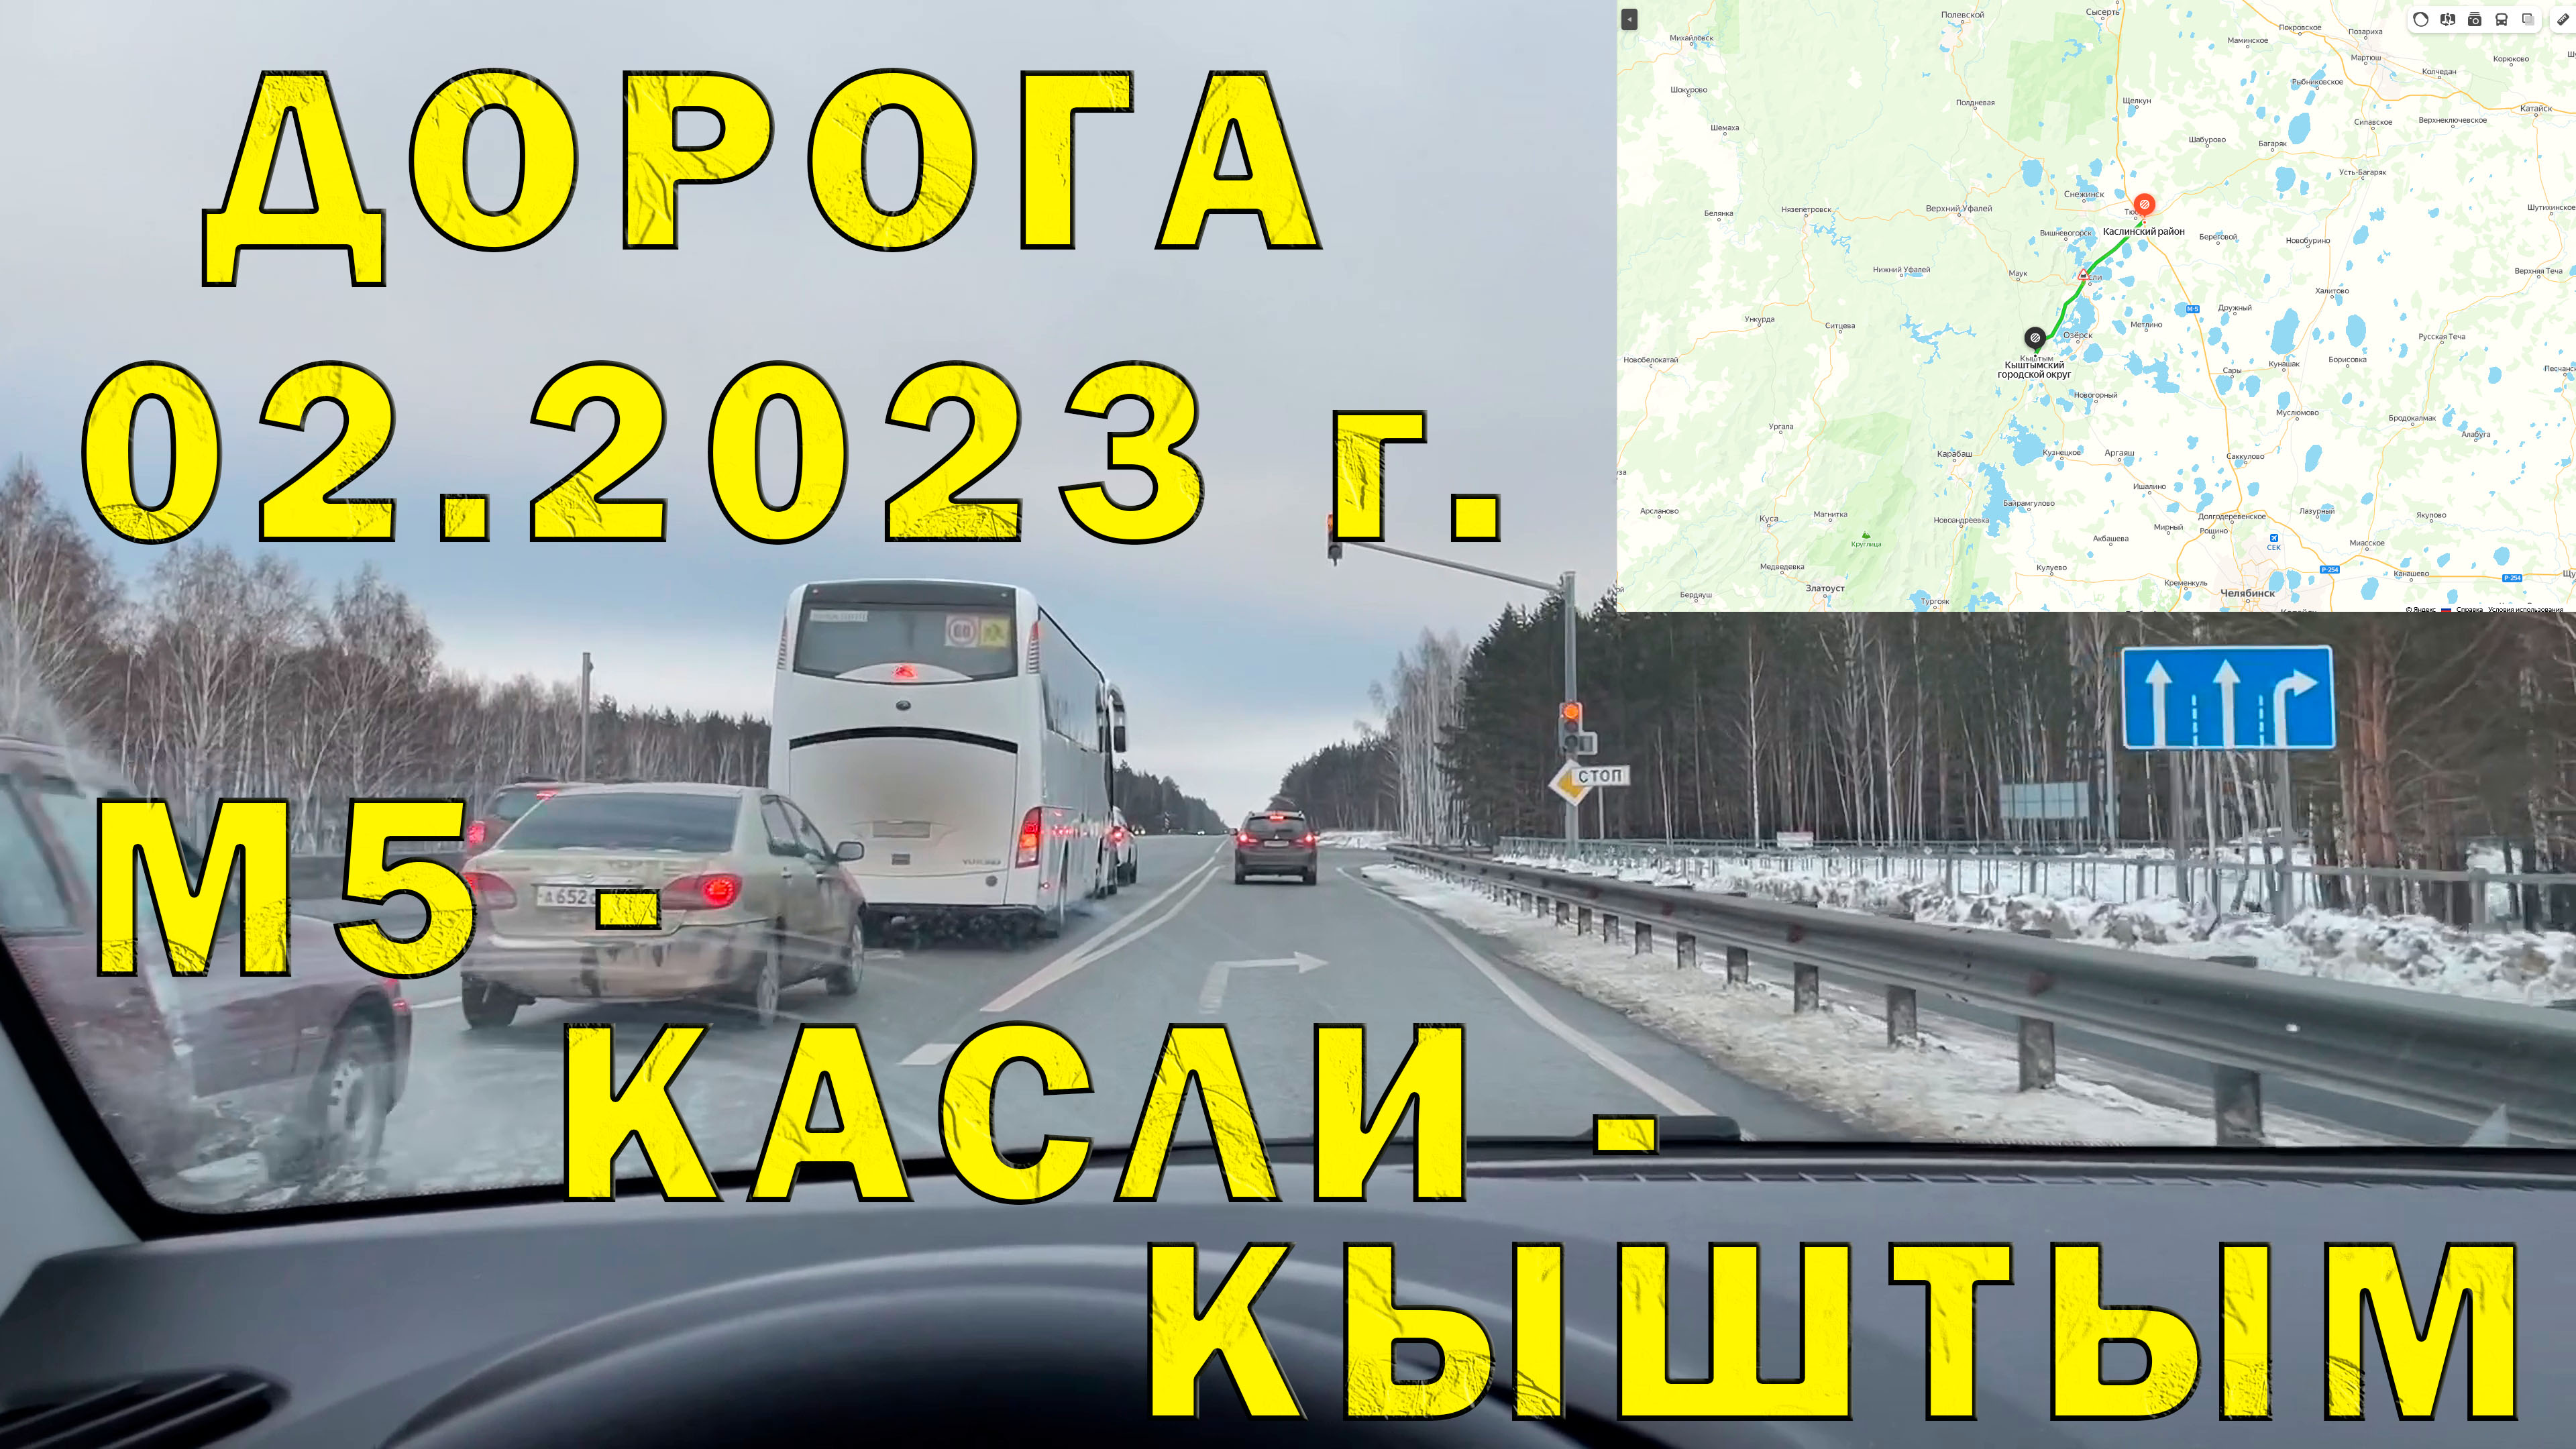 Участок Автодороги поворот с М5 на Касли до Кыштыма. Состояния, инфраструктура (02.2023)